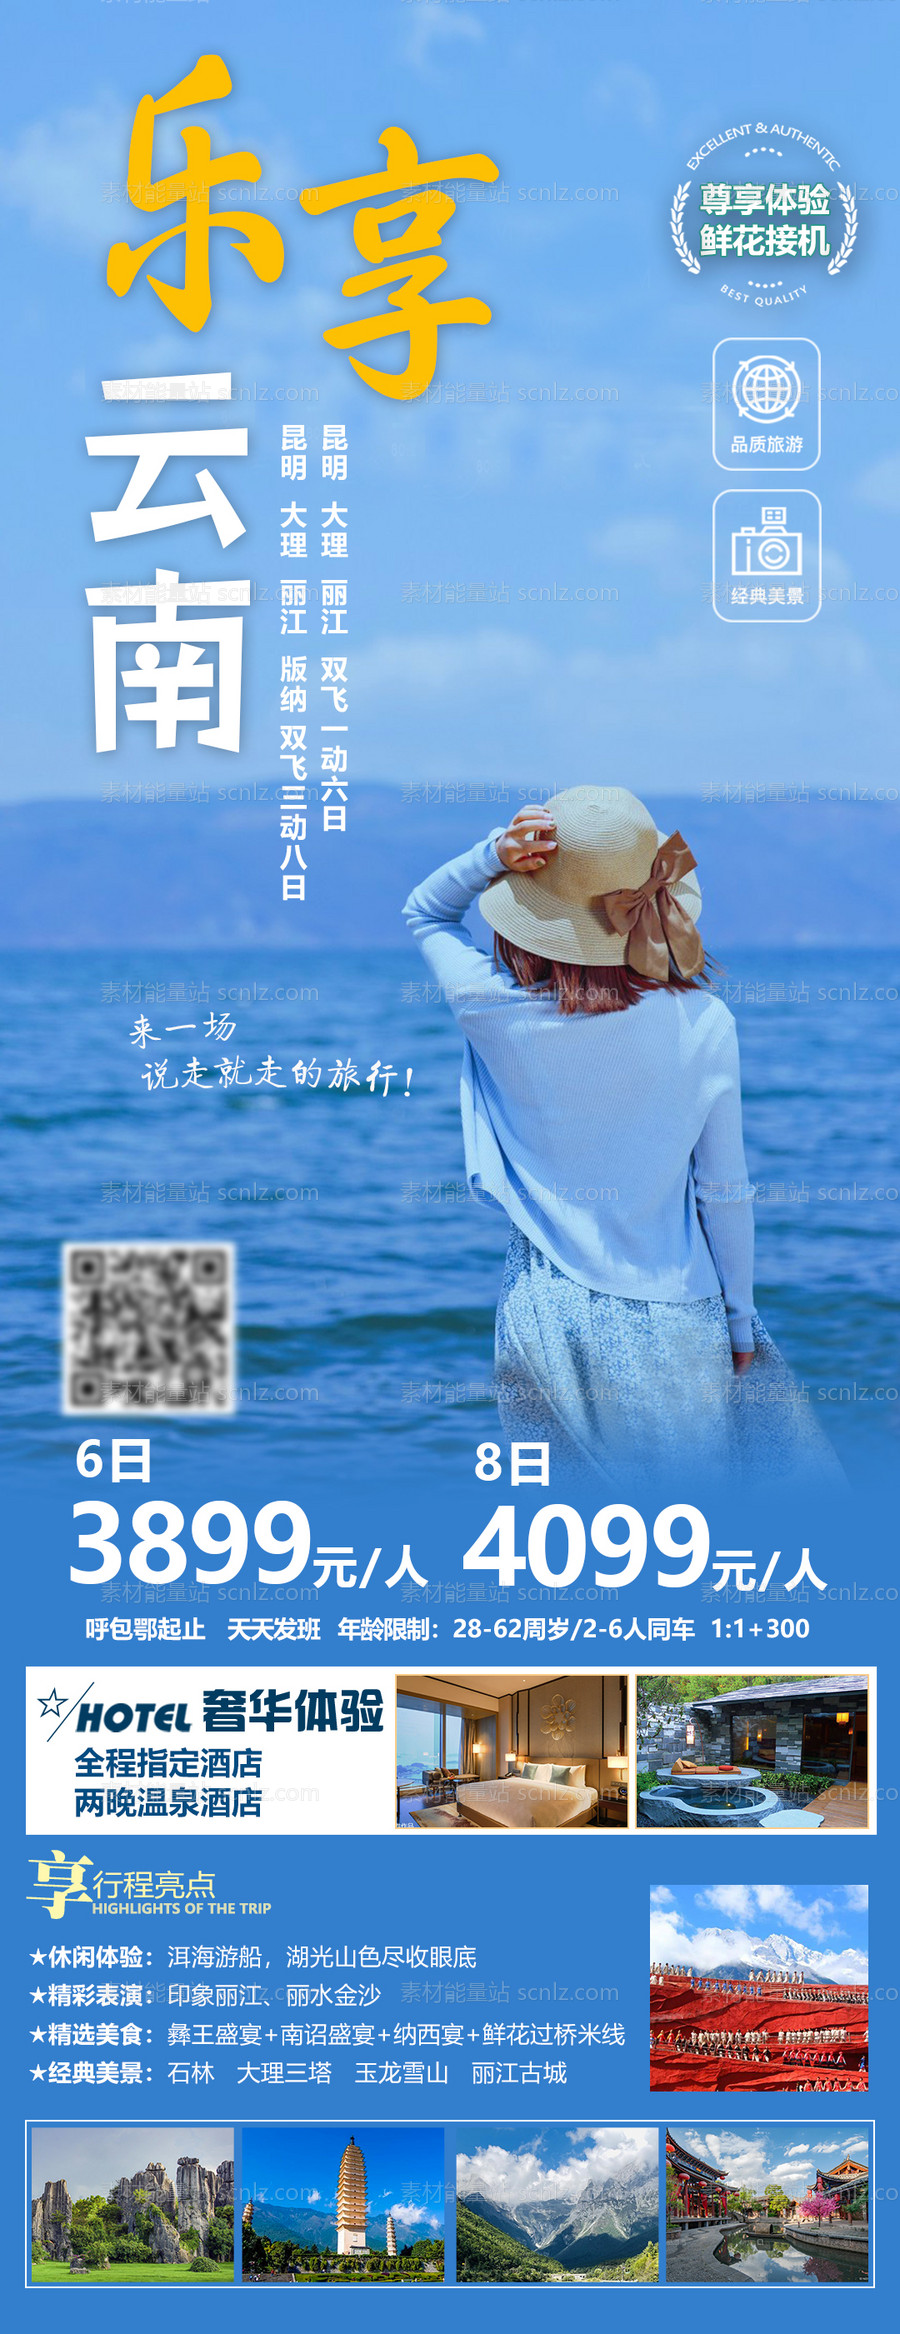 素材能量站-乐享云南旅游海报